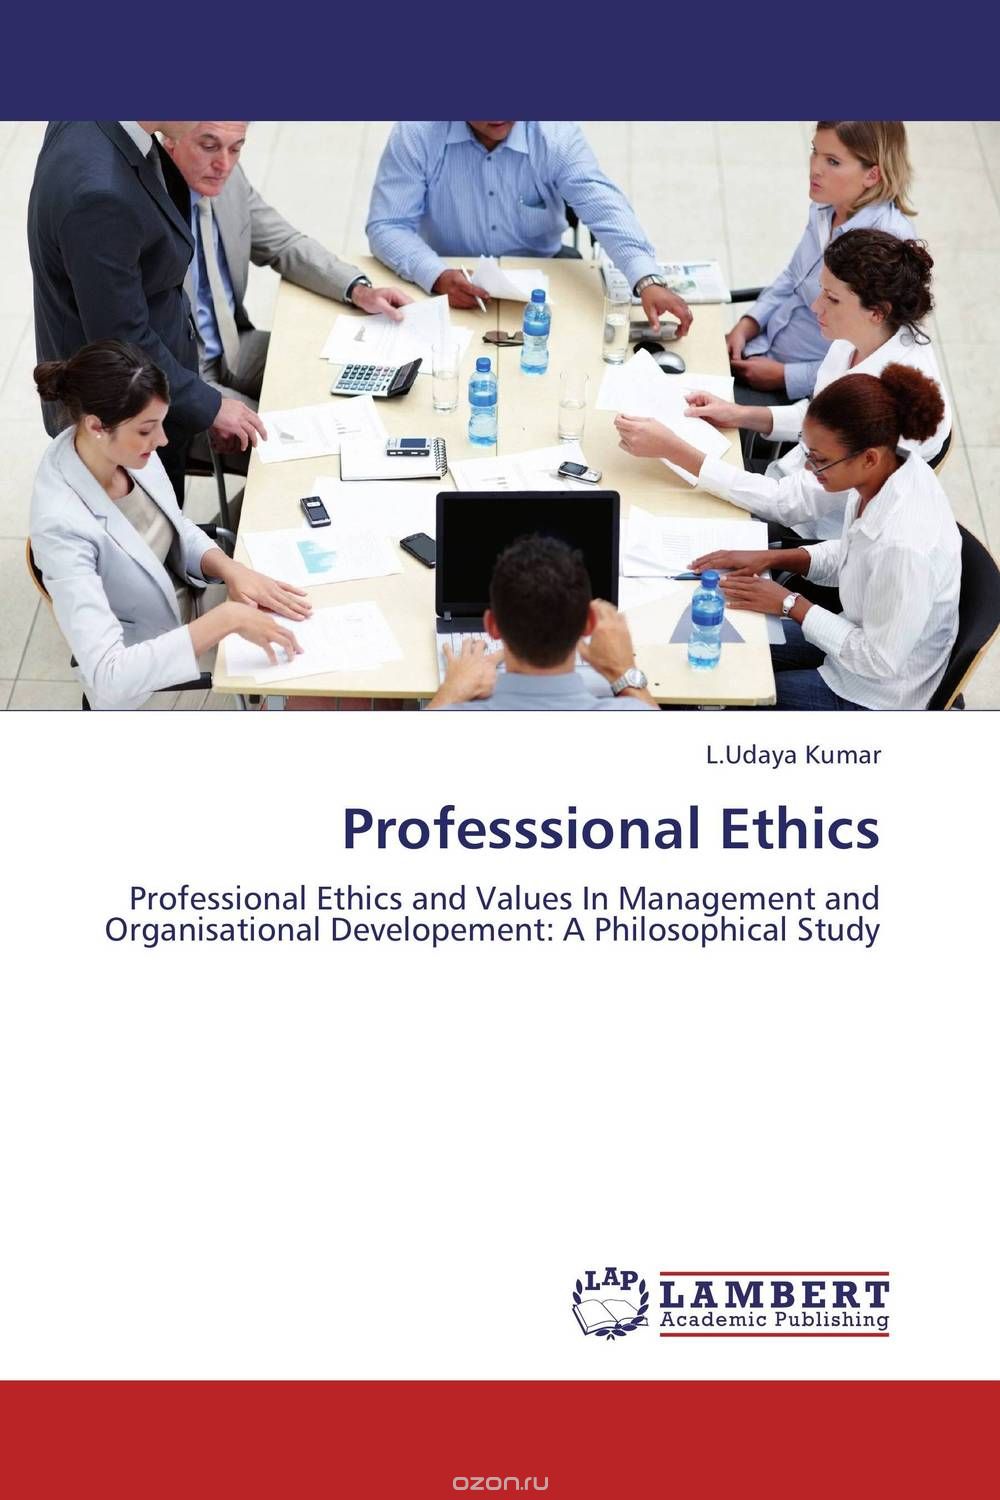 Скачать книгу "Professsional Ethics"